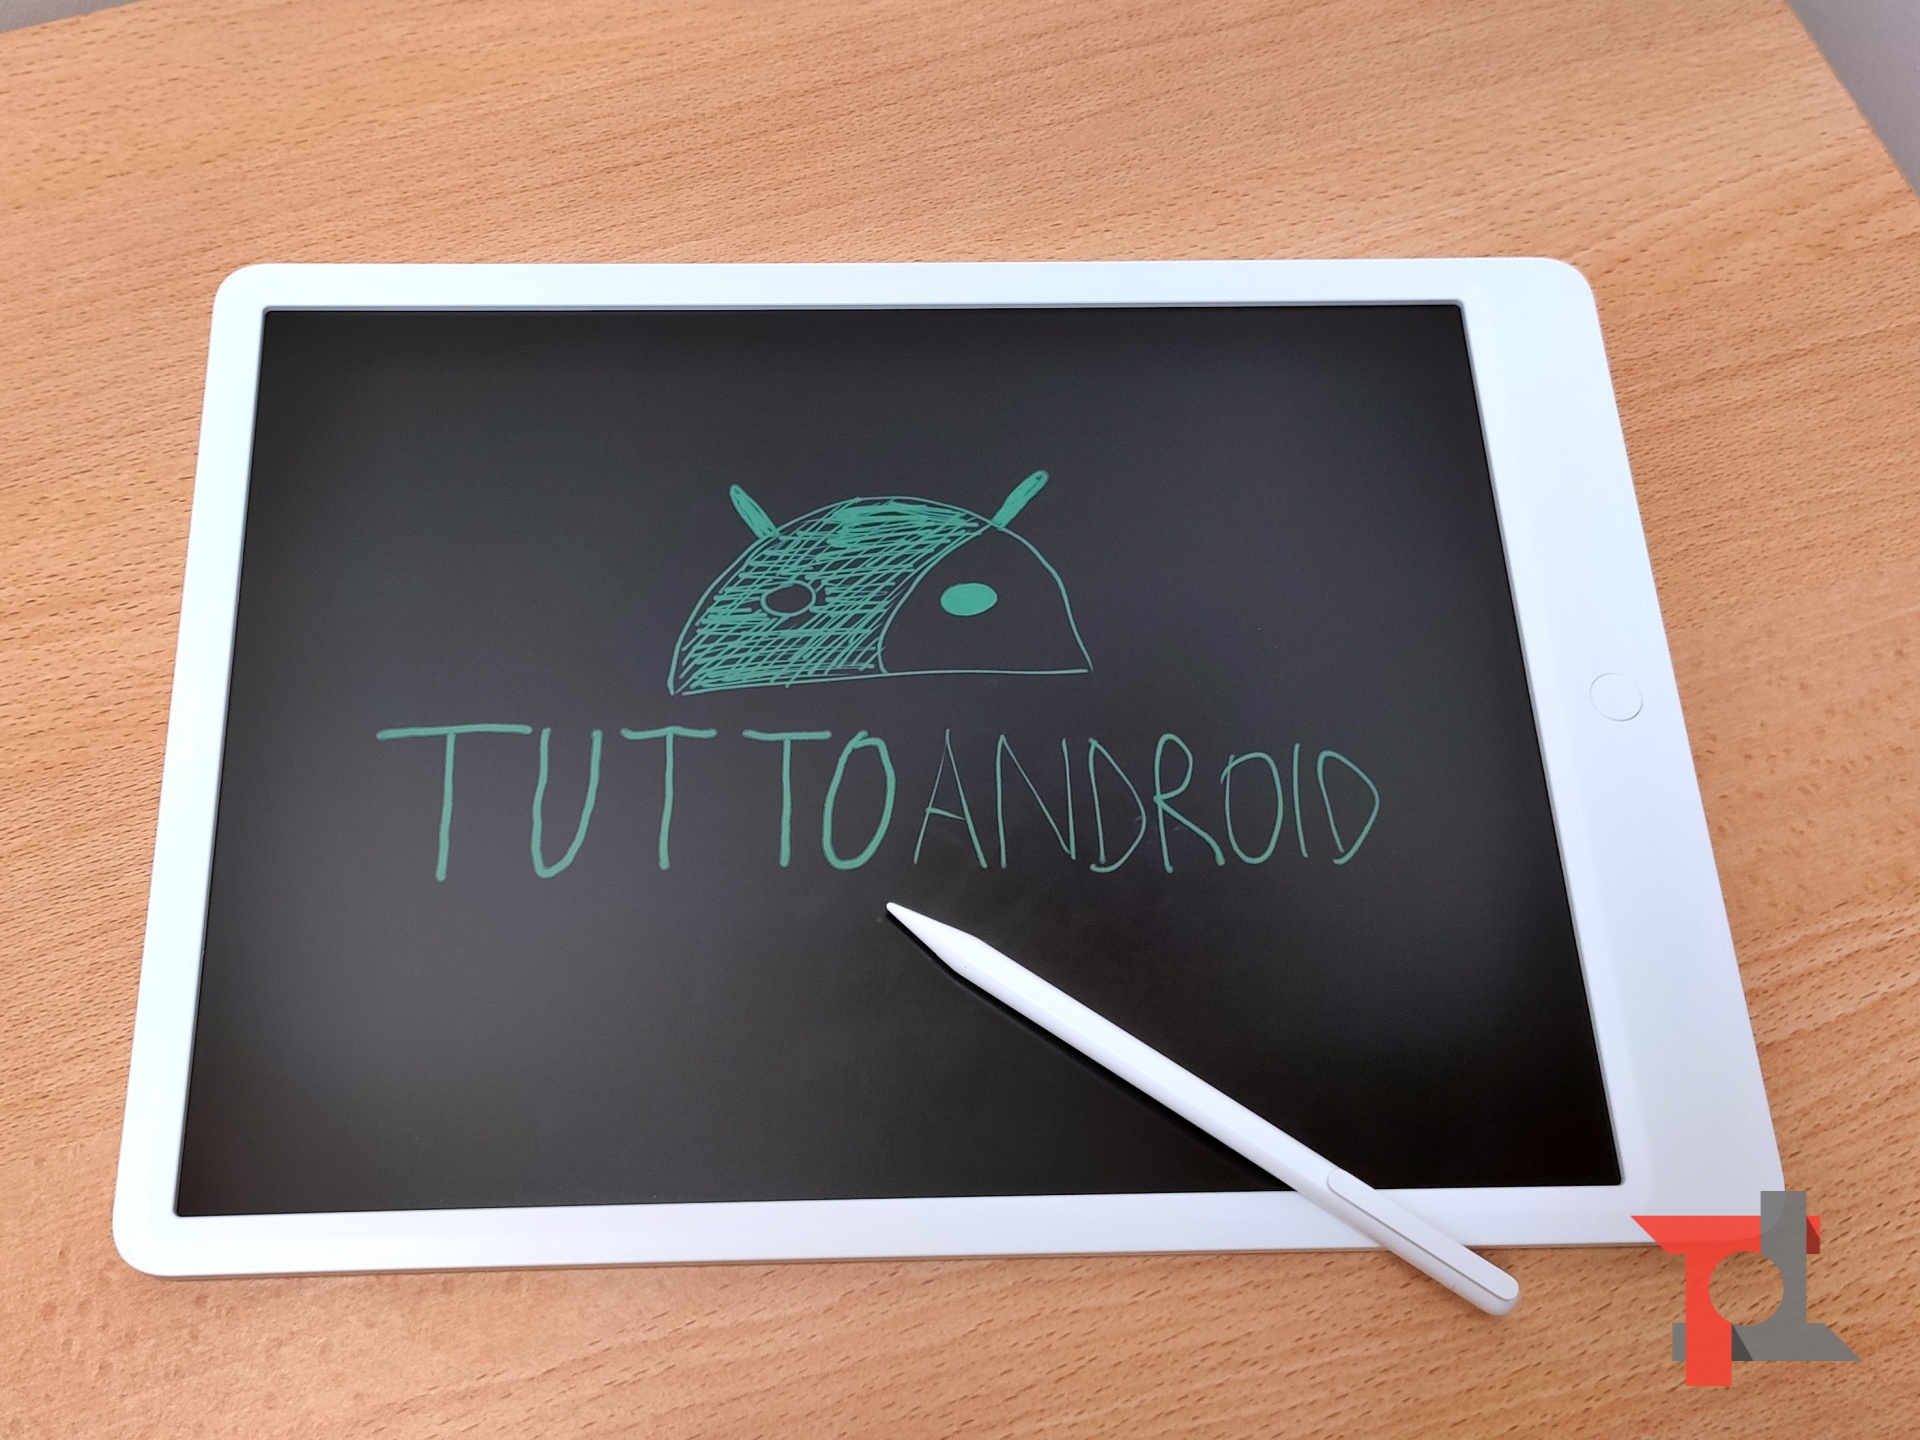 Abbiamo provato Xiaomi MIJIA LCD Writing Tablet: ecco come va 5